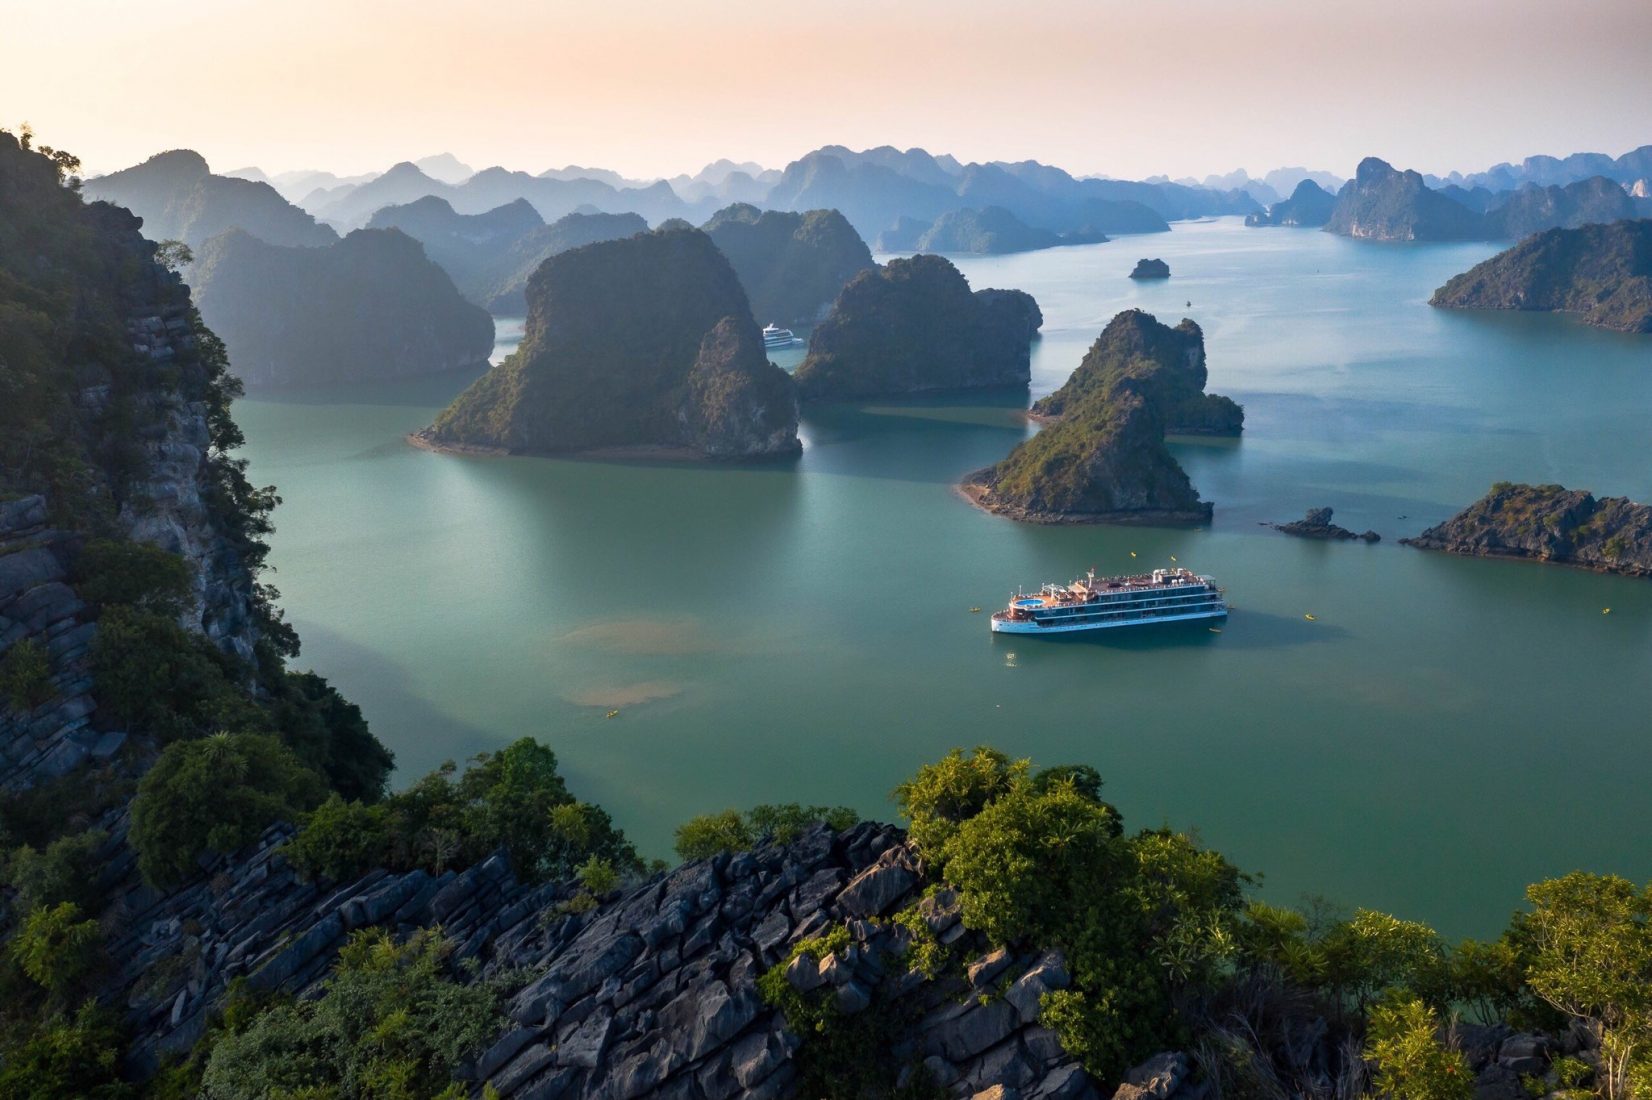 Vịnh Hạ Long - một trong những điểm đến hấp dẫn nhất của Việt Nam. Nếu bạn muốn biết thêm về khung cảnh tuyệt đẹp của Vịnh Hạ Long cũng như quần đảo Cát Bà xung quanh, hãy truy cập trang web của chúng tôi. Bạn sẽ được tận hưởng trải nghiệm không thể quên trong cuộc hành trình này.